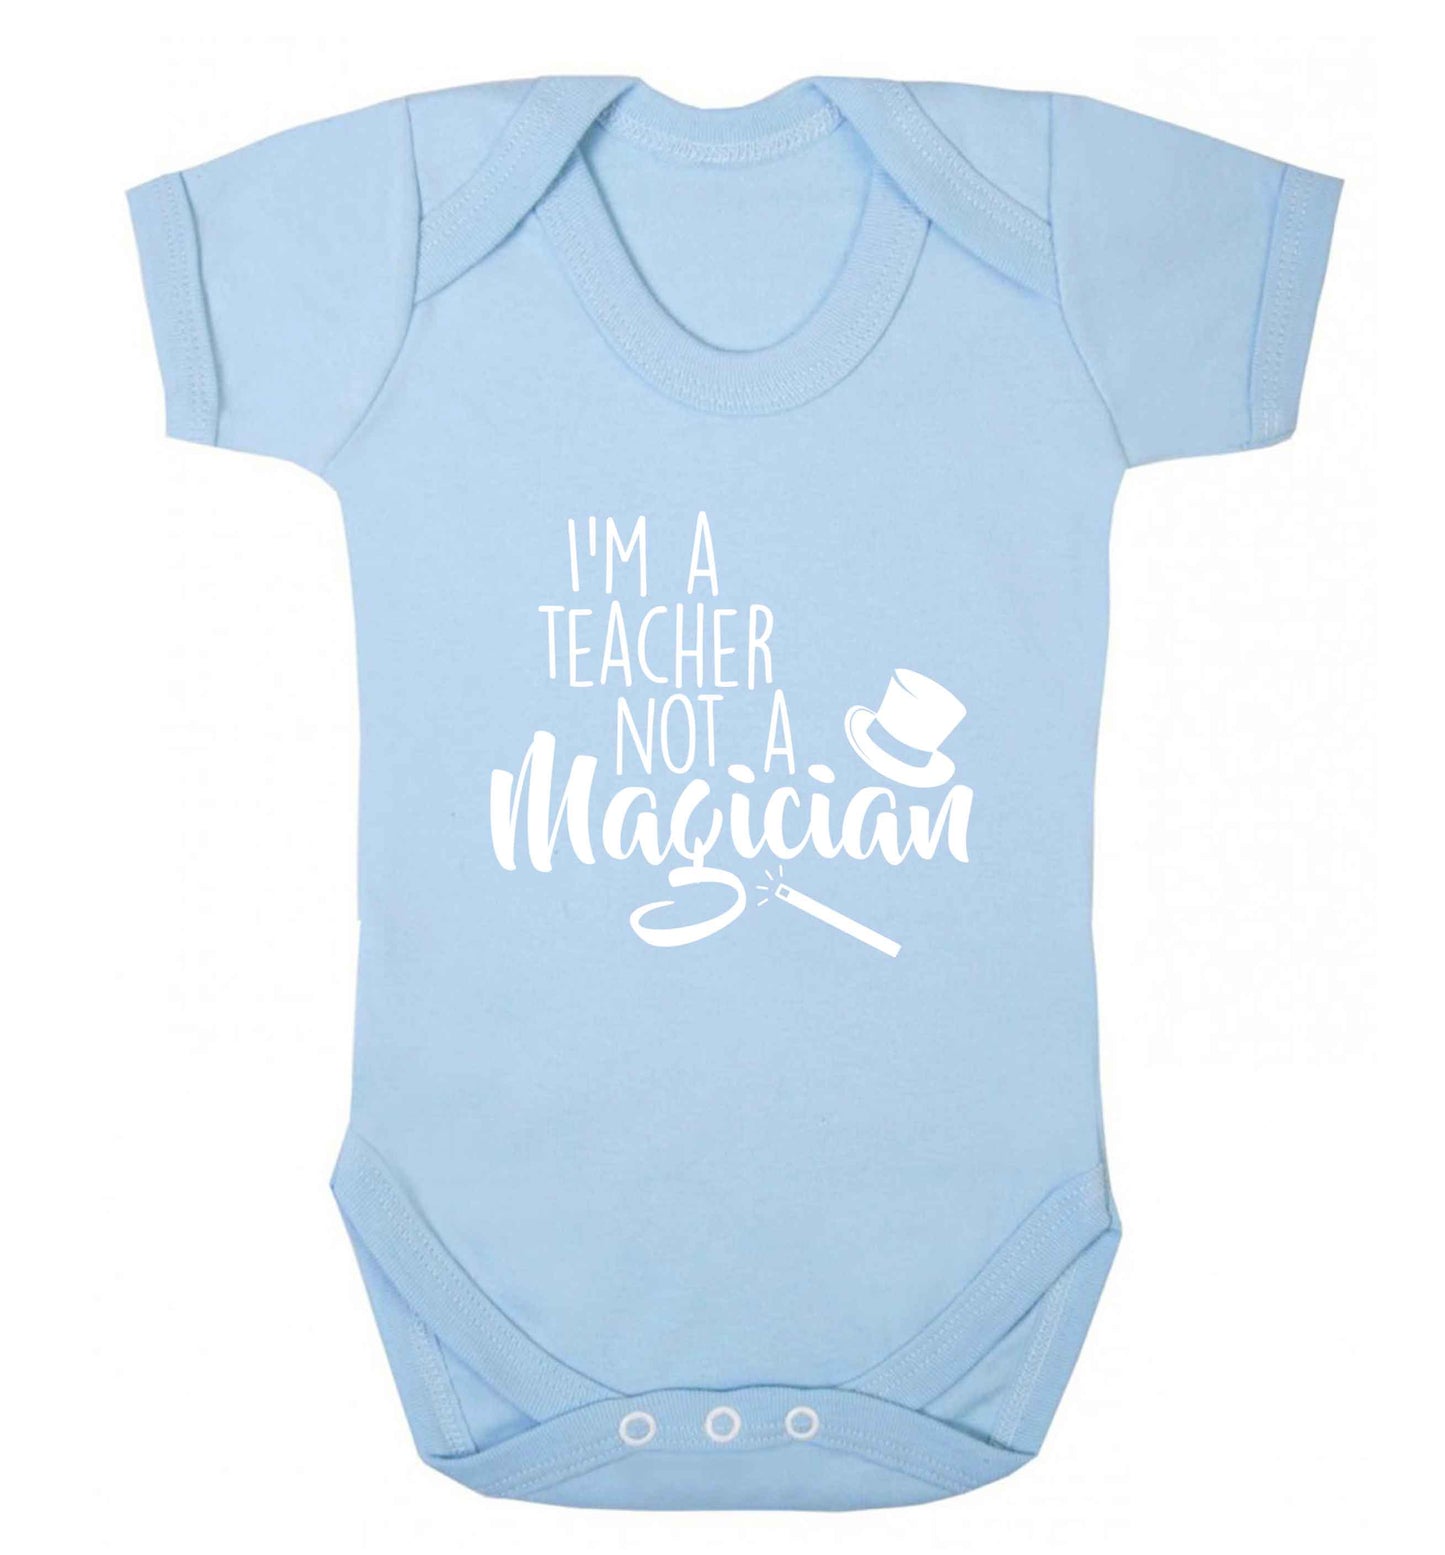 I'm a teacher not a magician baby vest pale blue 18-24 months